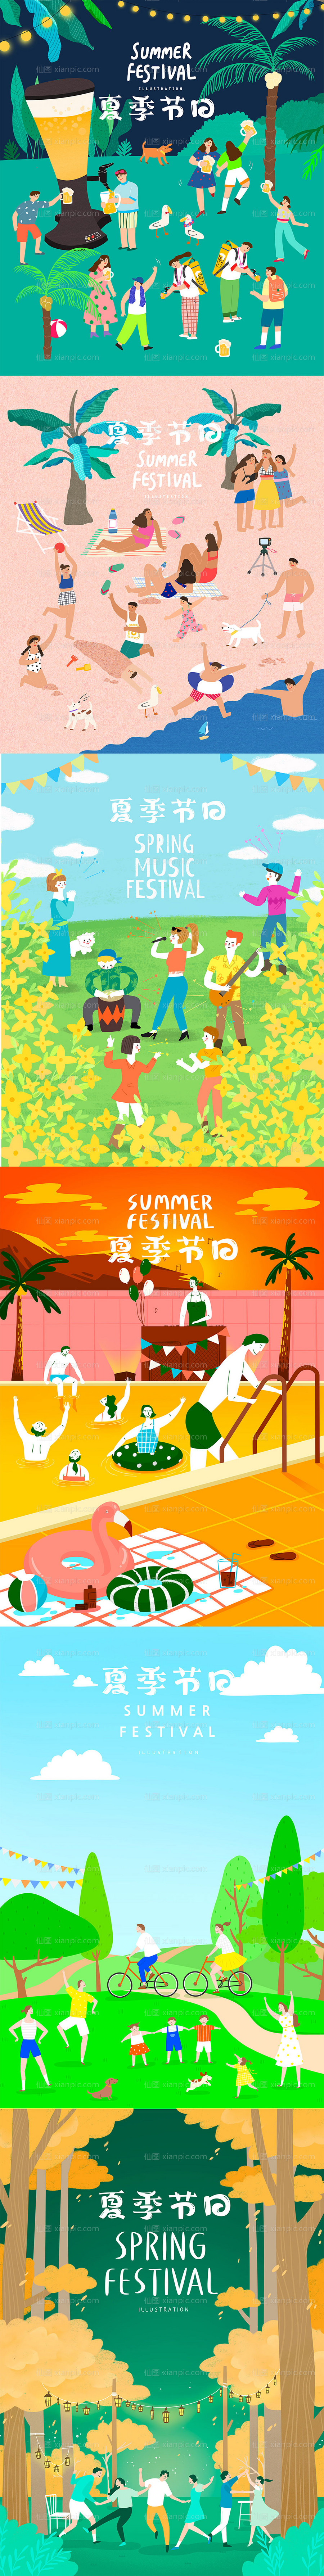 素材乐-夏季节日狂欢派对插画海报